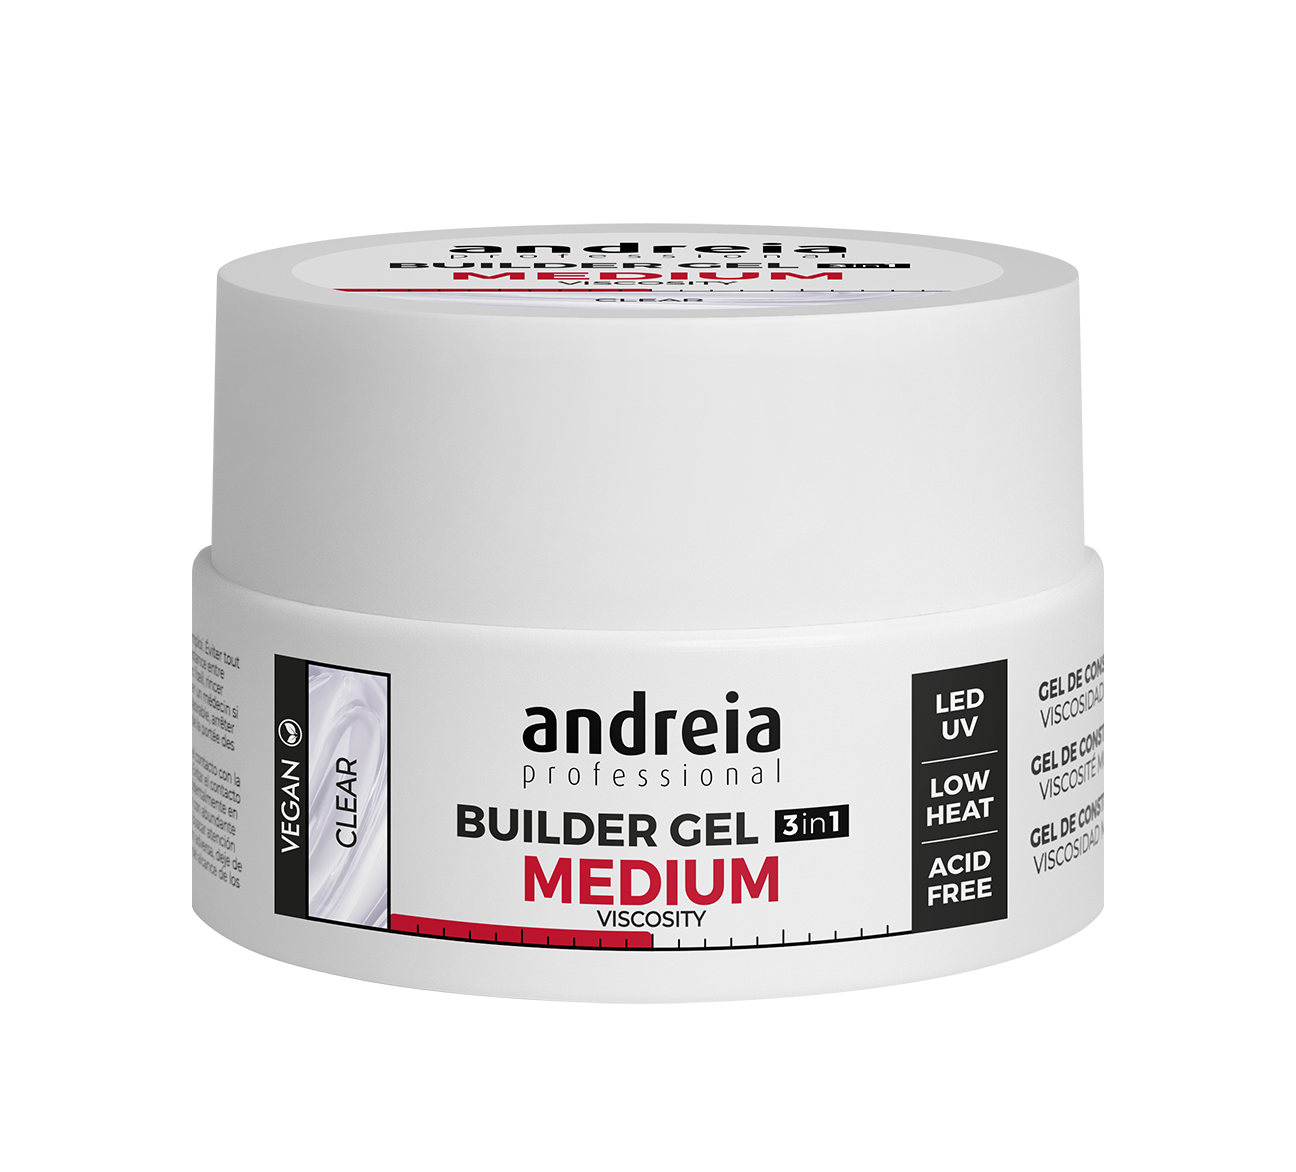 Andreia esmaltes builder gel medium viscosity -  viscosidad media 22 gr. Clear